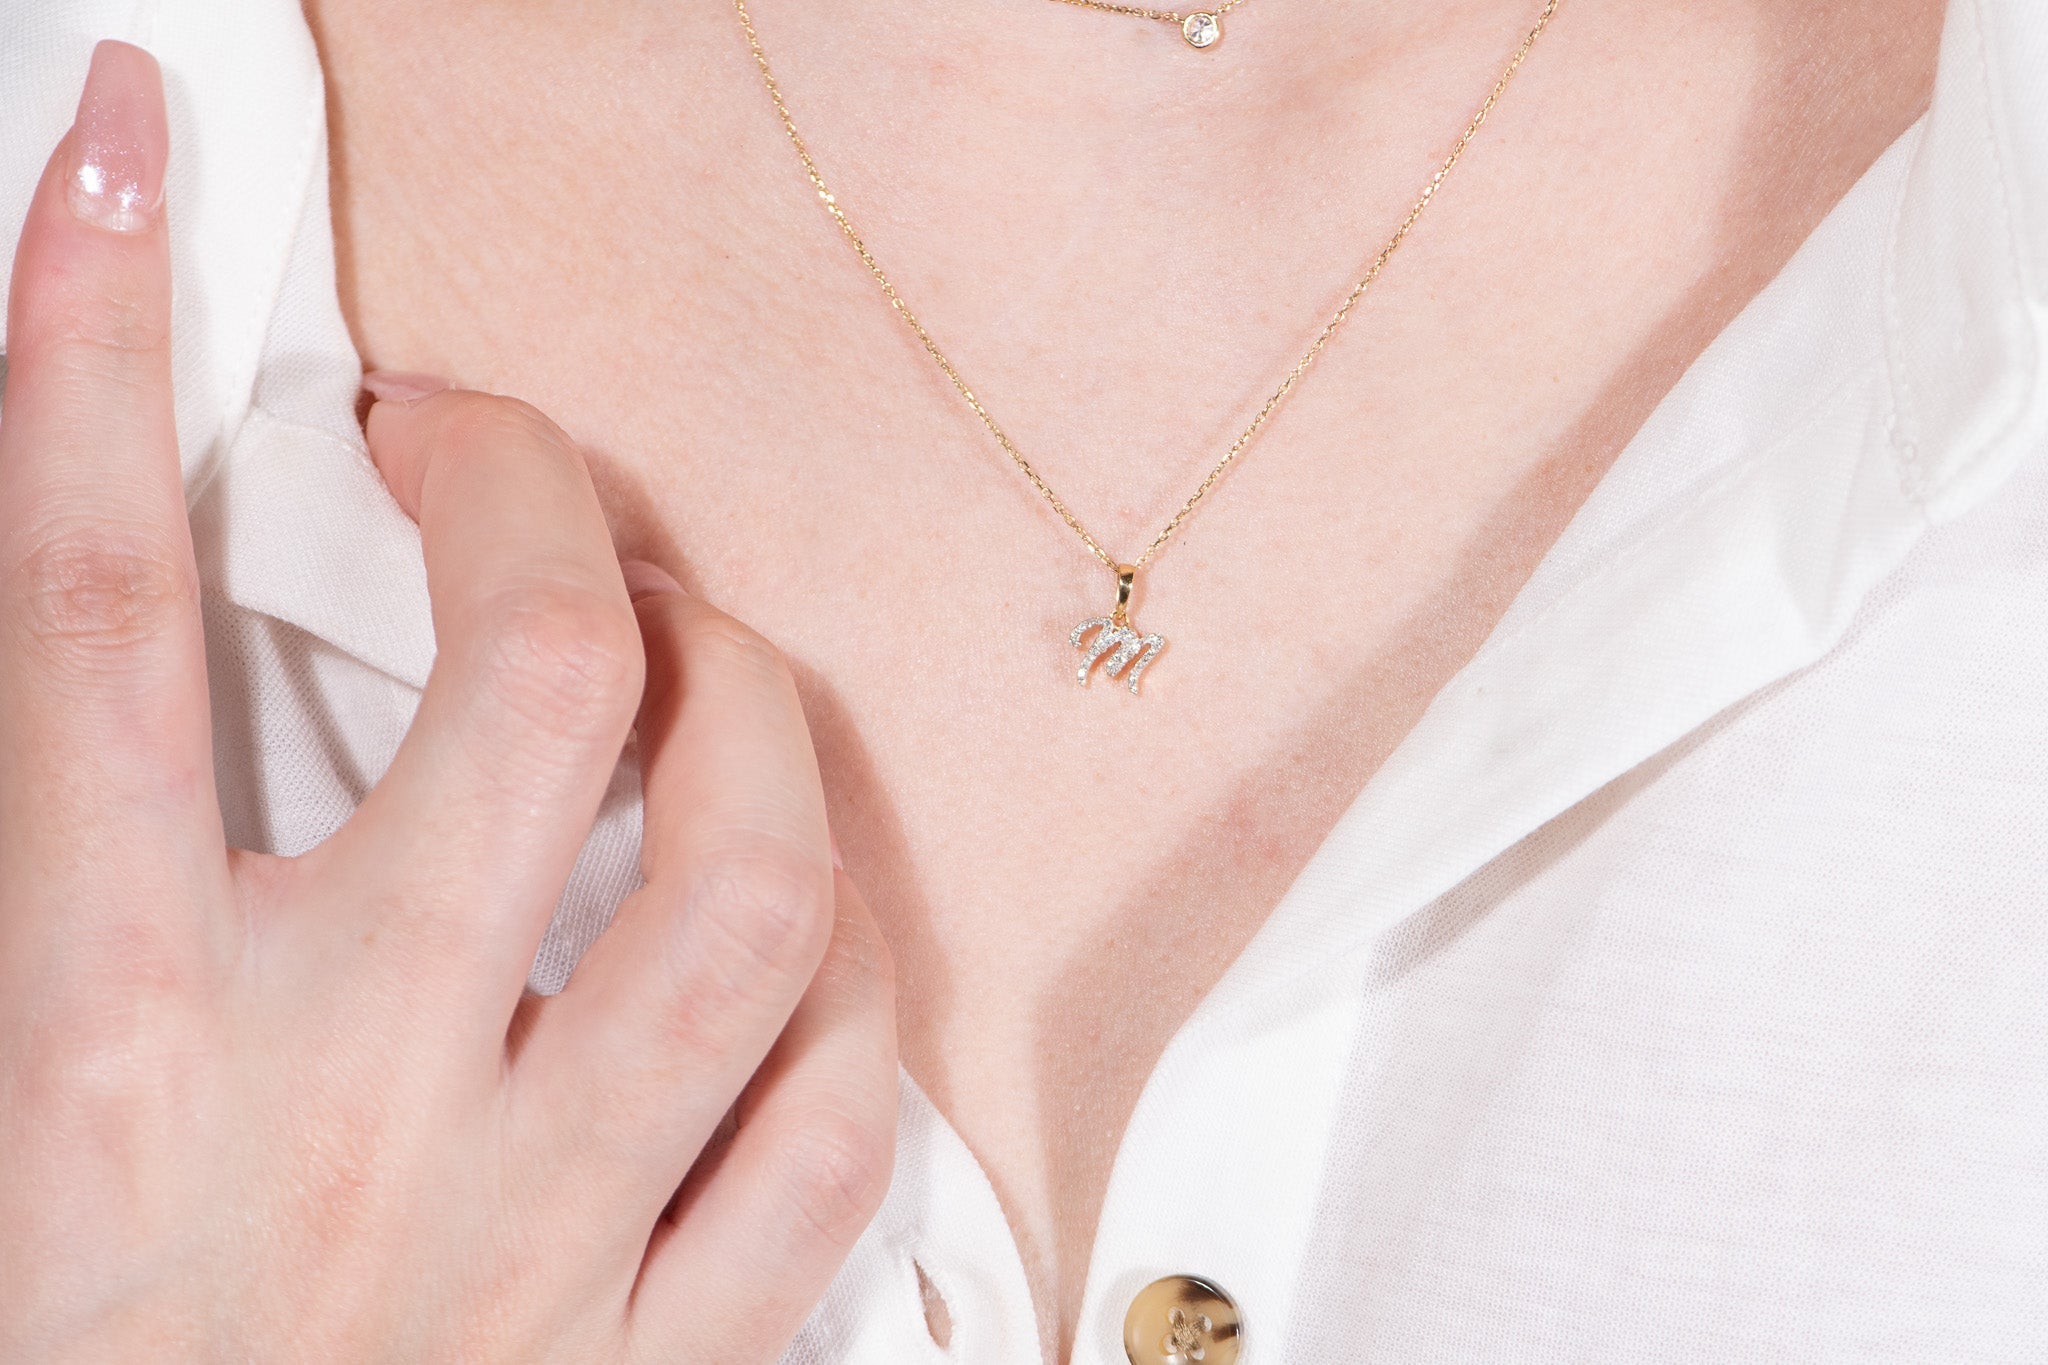 Cursive Diamond Initial Necklace - M Necklaces Estella Collection #product_description# 18557 14k Diamond Gemstone #tag4# #tag5# #tag6# #tag7# #tag8# #tag9# #tag10# 14k Yellow Gold